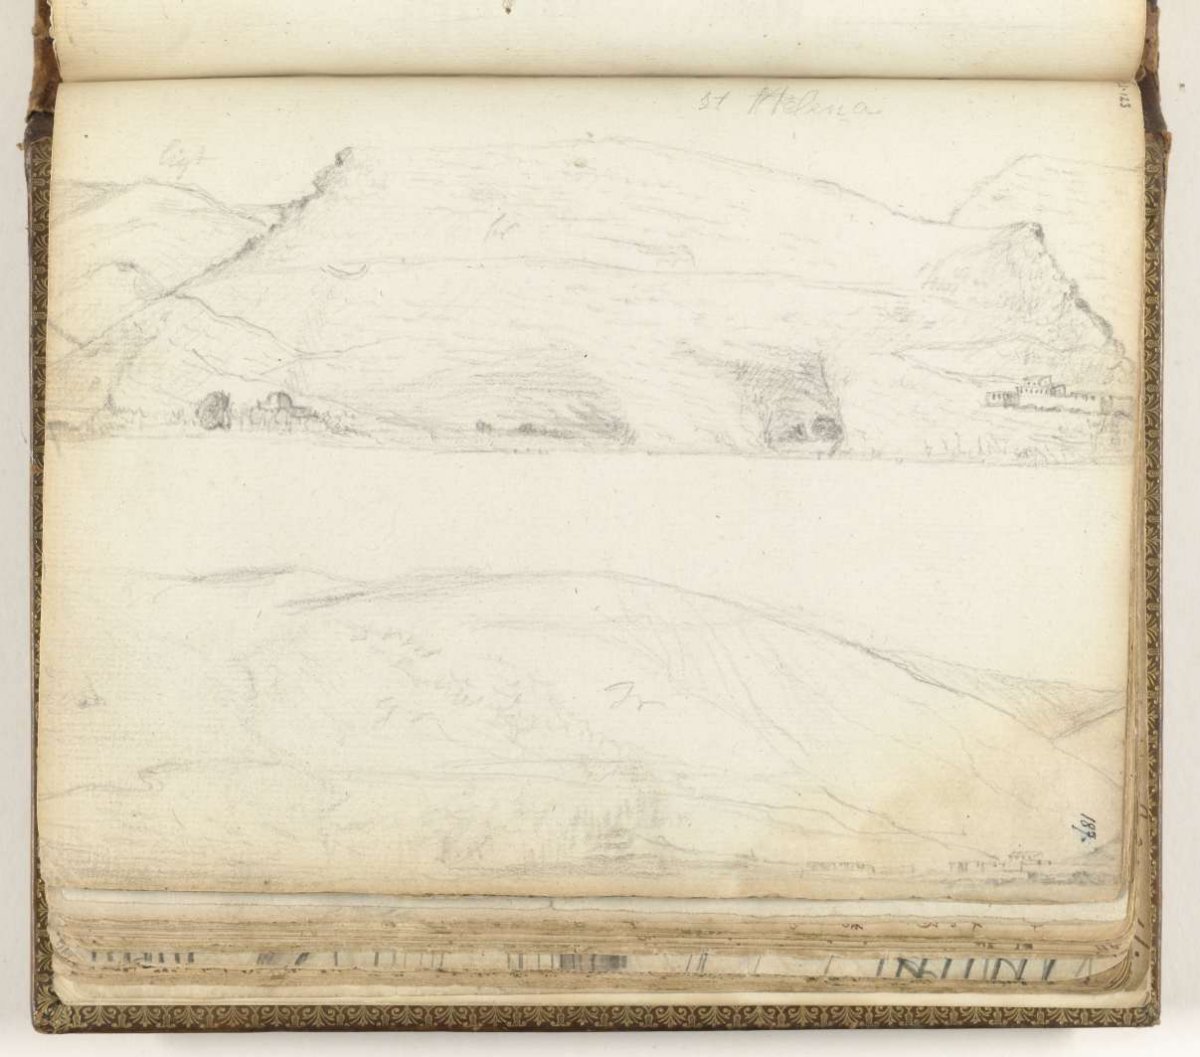 Baai Sint-Helena, Jan Brandes, 1787